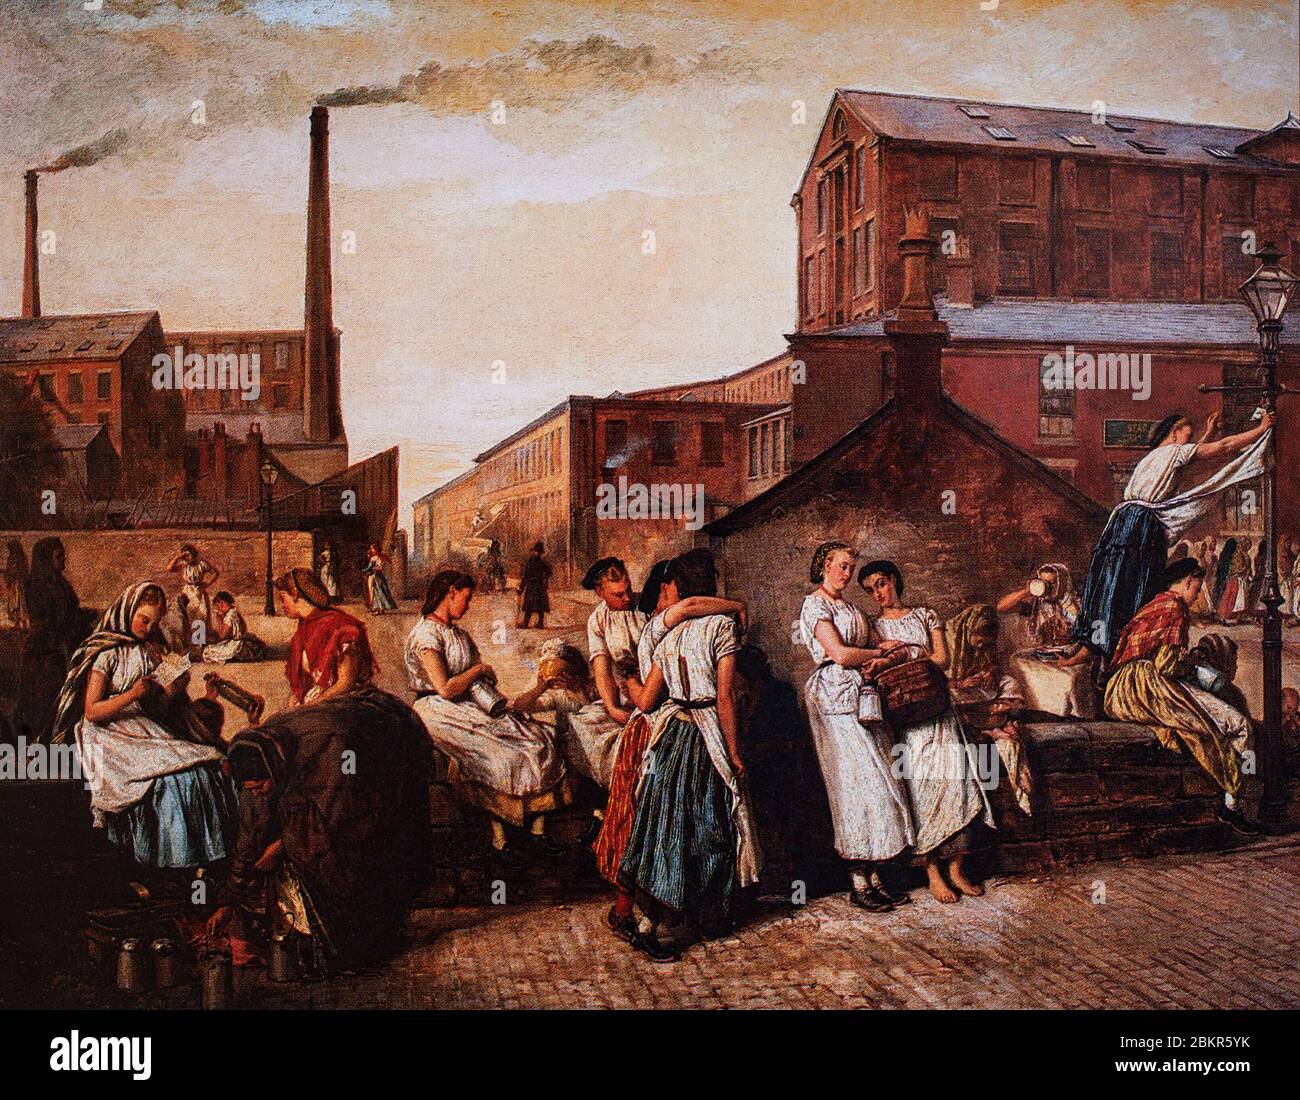 "The Dinner Hour" in Victoria Mill, Wallgate, Wigan zeigt eine einfache und unromantisierte Sicht auf die arbeitenden Menschen in einem industriellen Umfeld. Es wurde 1874 von Eyre Crowe ARA (1824–1910), einem englischen Maler, der hauptsächlich historische Kunst und Genreszenen, aber ein Interesse am sozialen Realismus hatte, geschaffen. Stockfoto